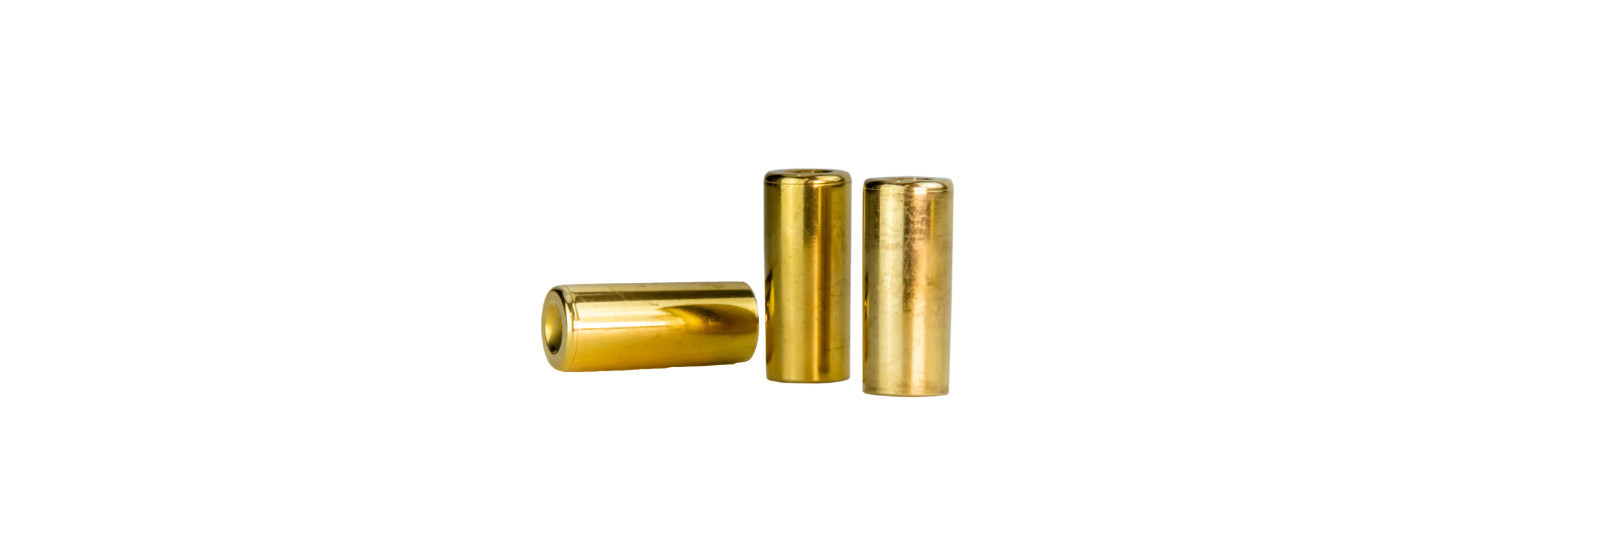 10 brass cases for .54 modern bullet